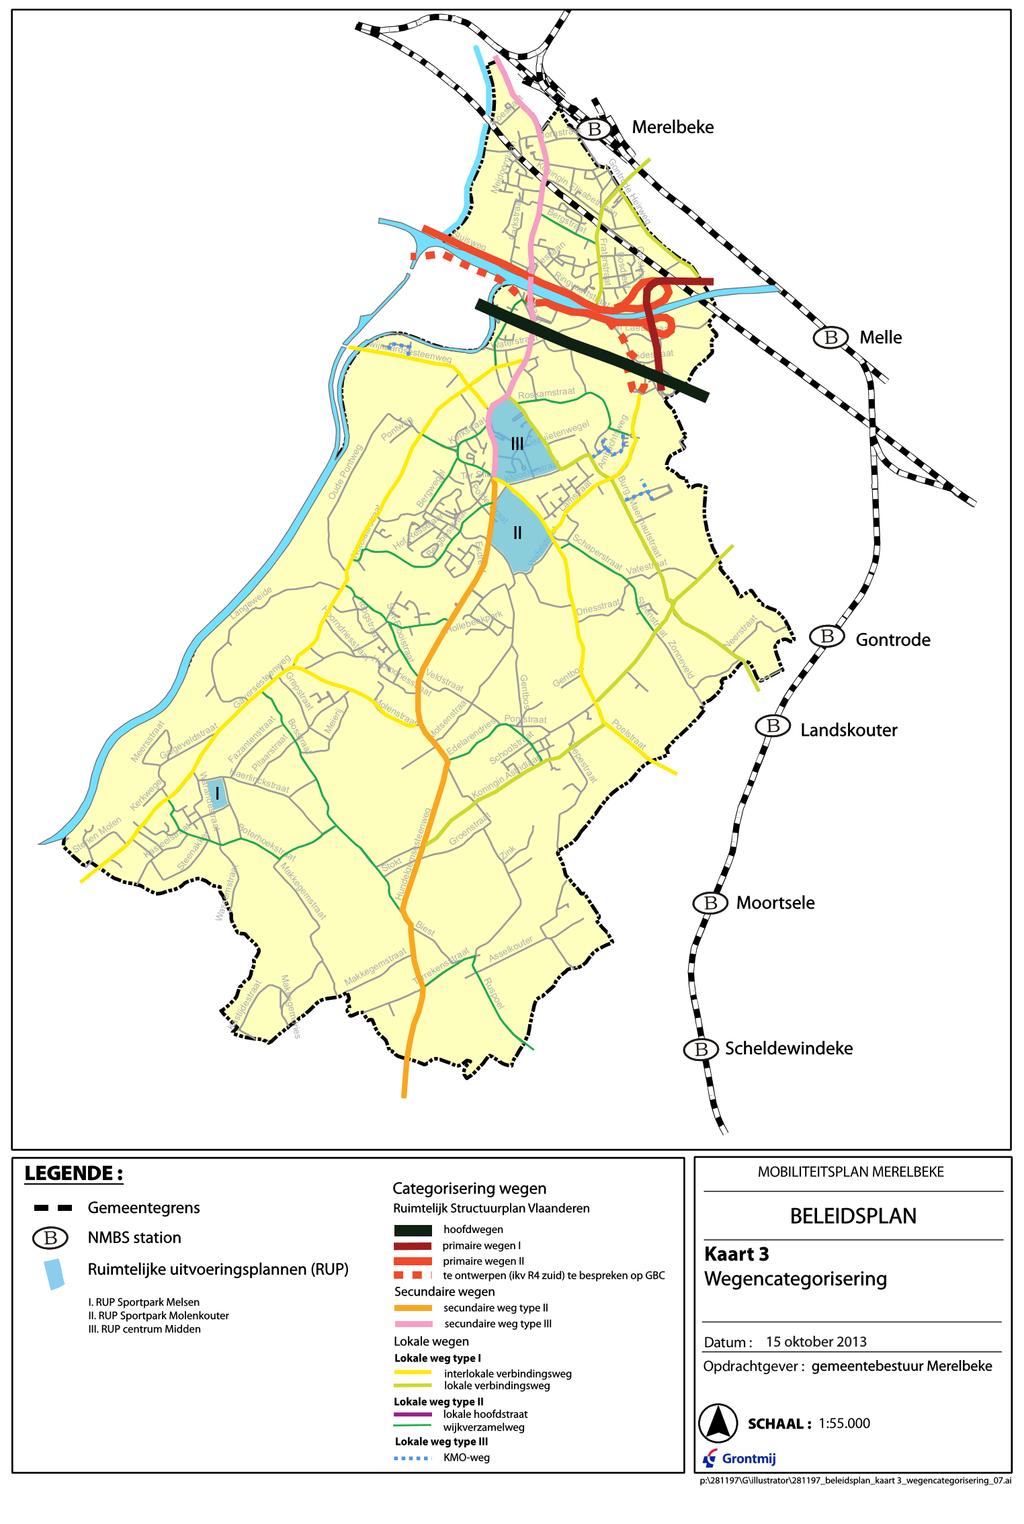 Figuur 39 : Categorisering wegennet gemeente Merelbeke